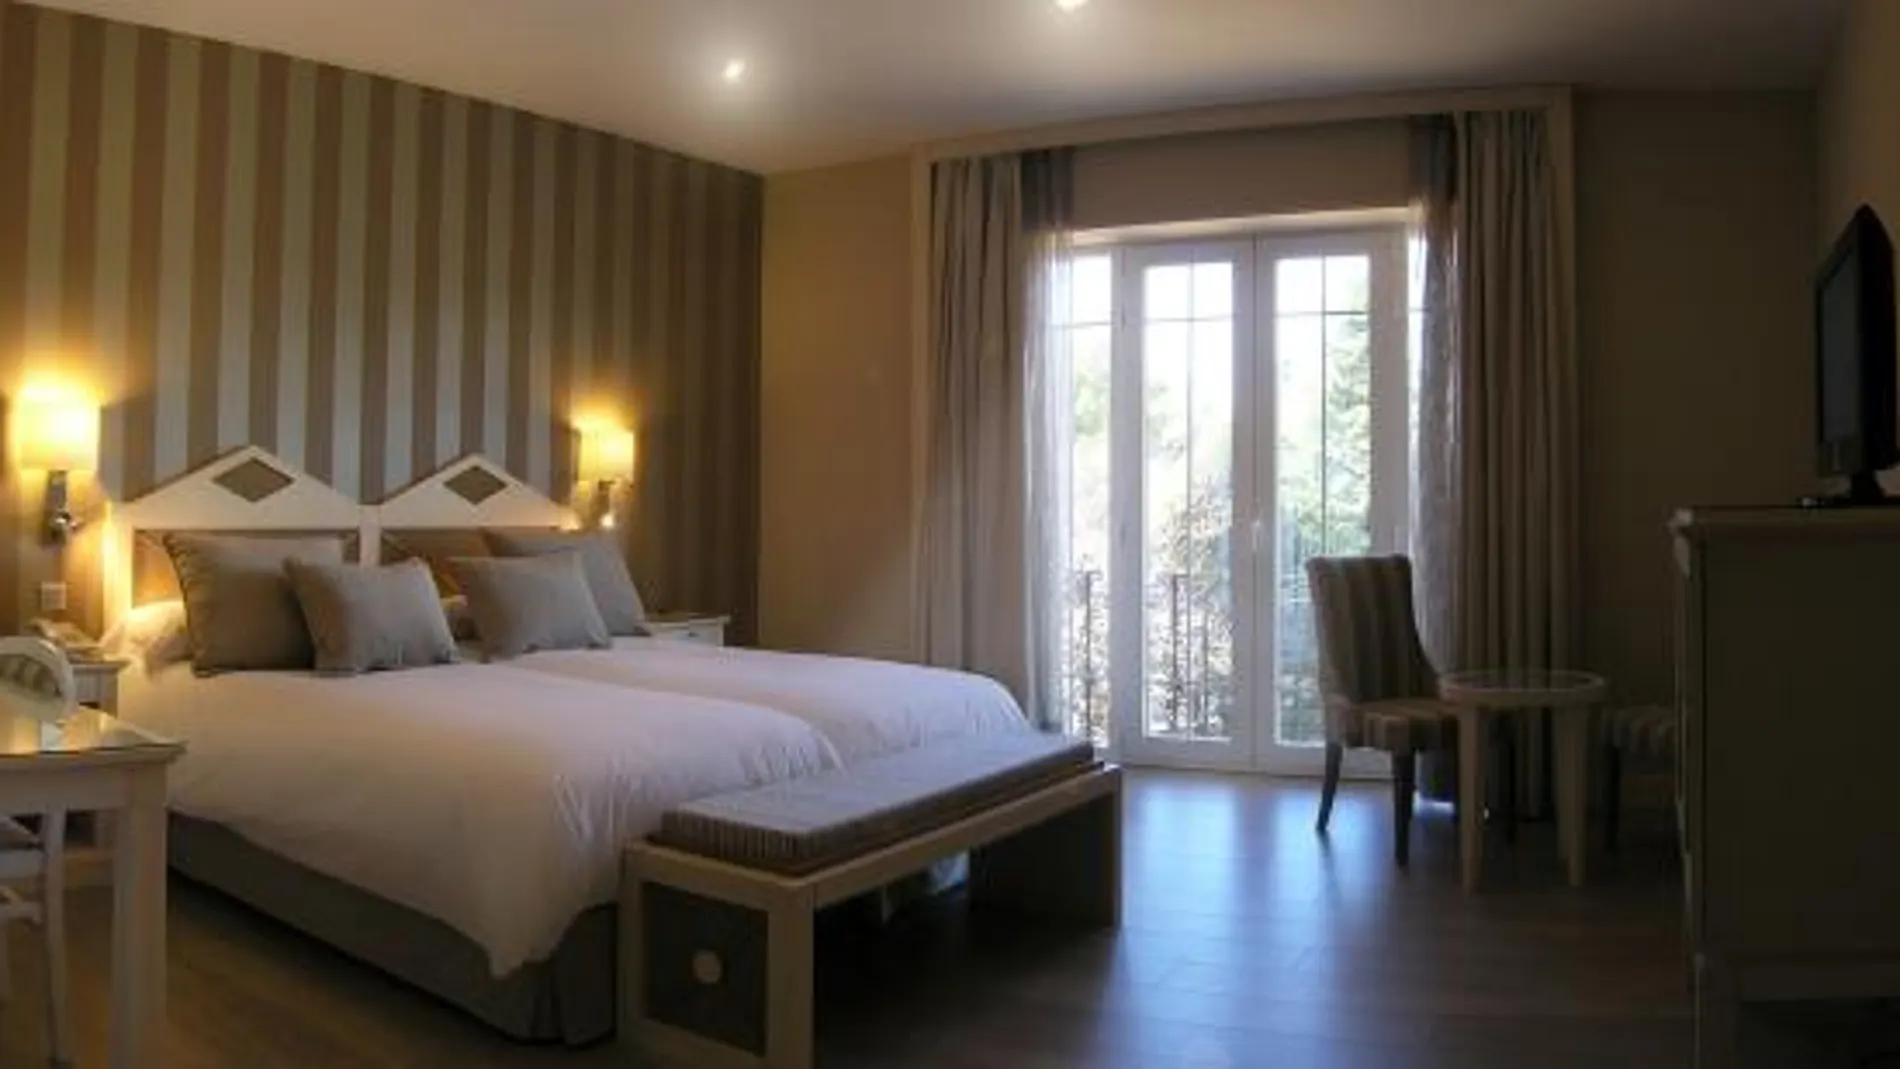 Fuentepizarro Business Resort inaugura un exclusivo y original hotel, sólo para empresas